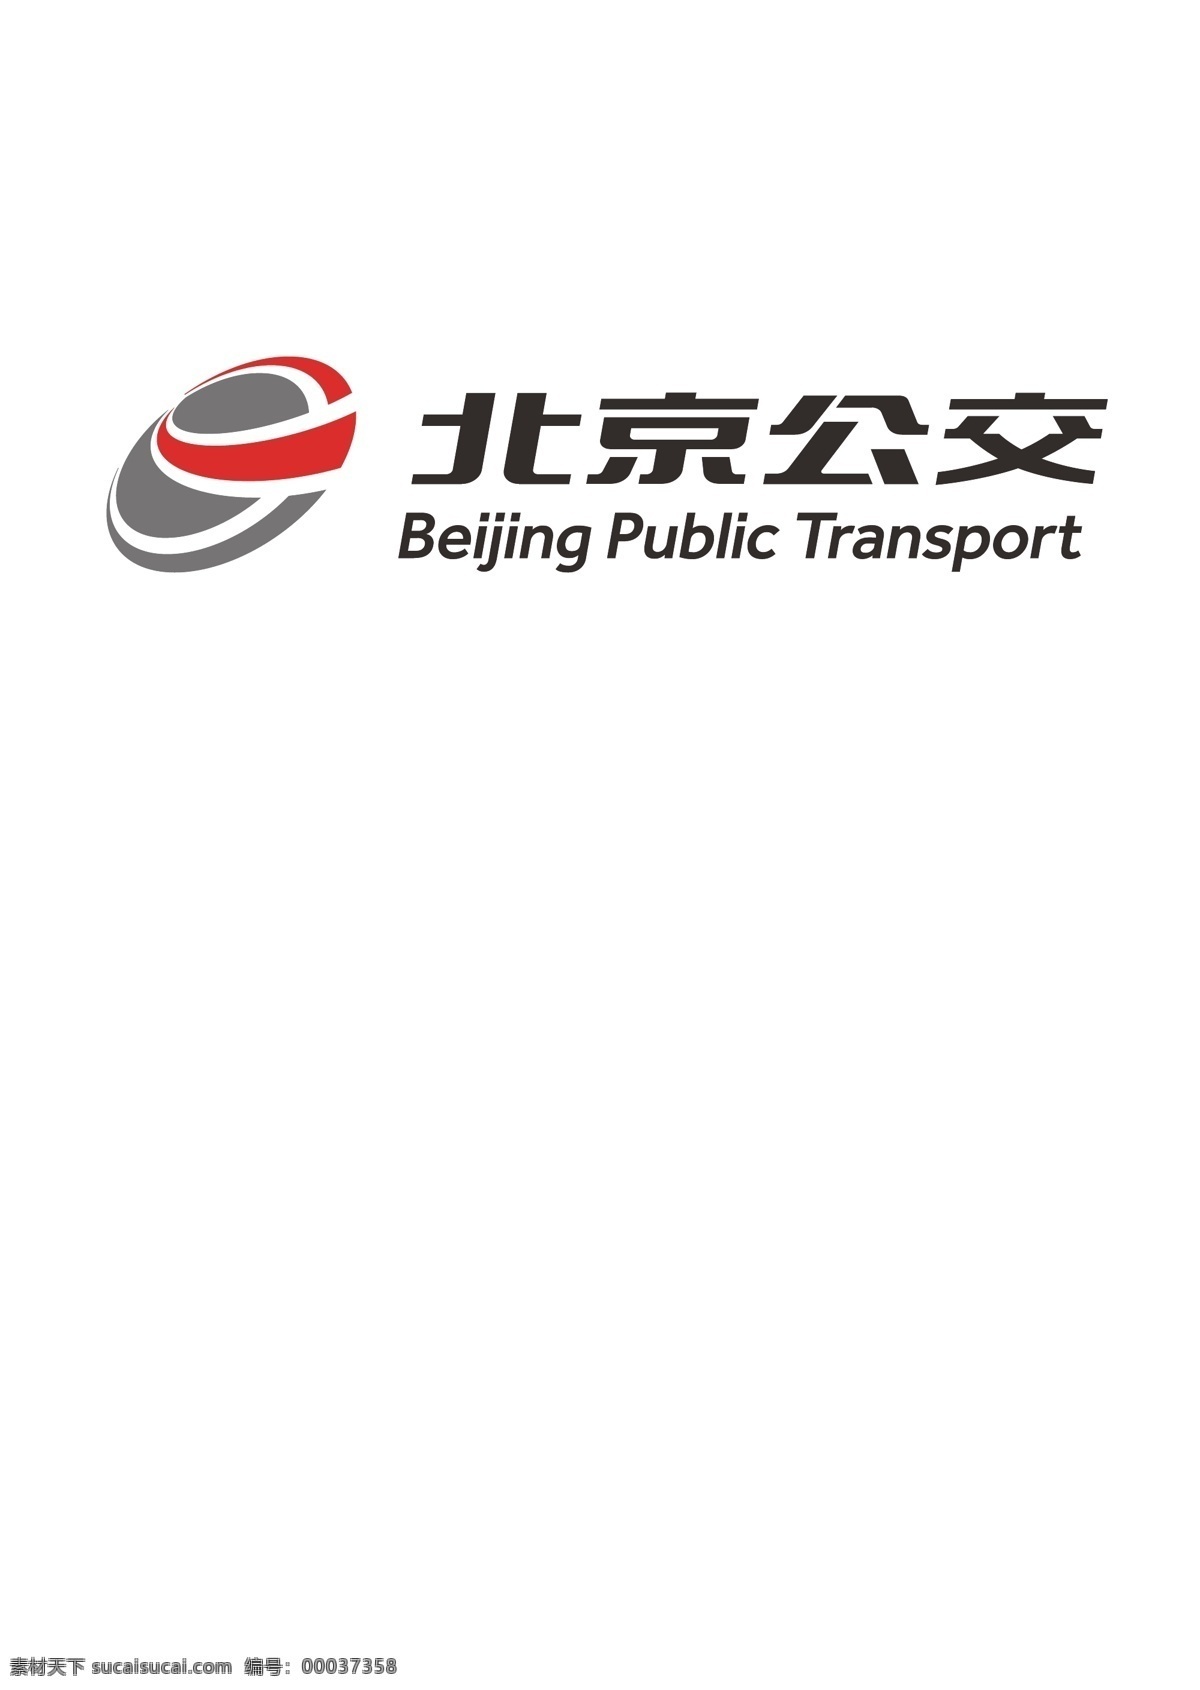 北京 公交 logo 标志矢量图 ai格式 北京公交 公交公司 矢量logo logo设计 创意设计 设计素材 标识 企业标识 图标 标志矢量 标志图标 其他图标